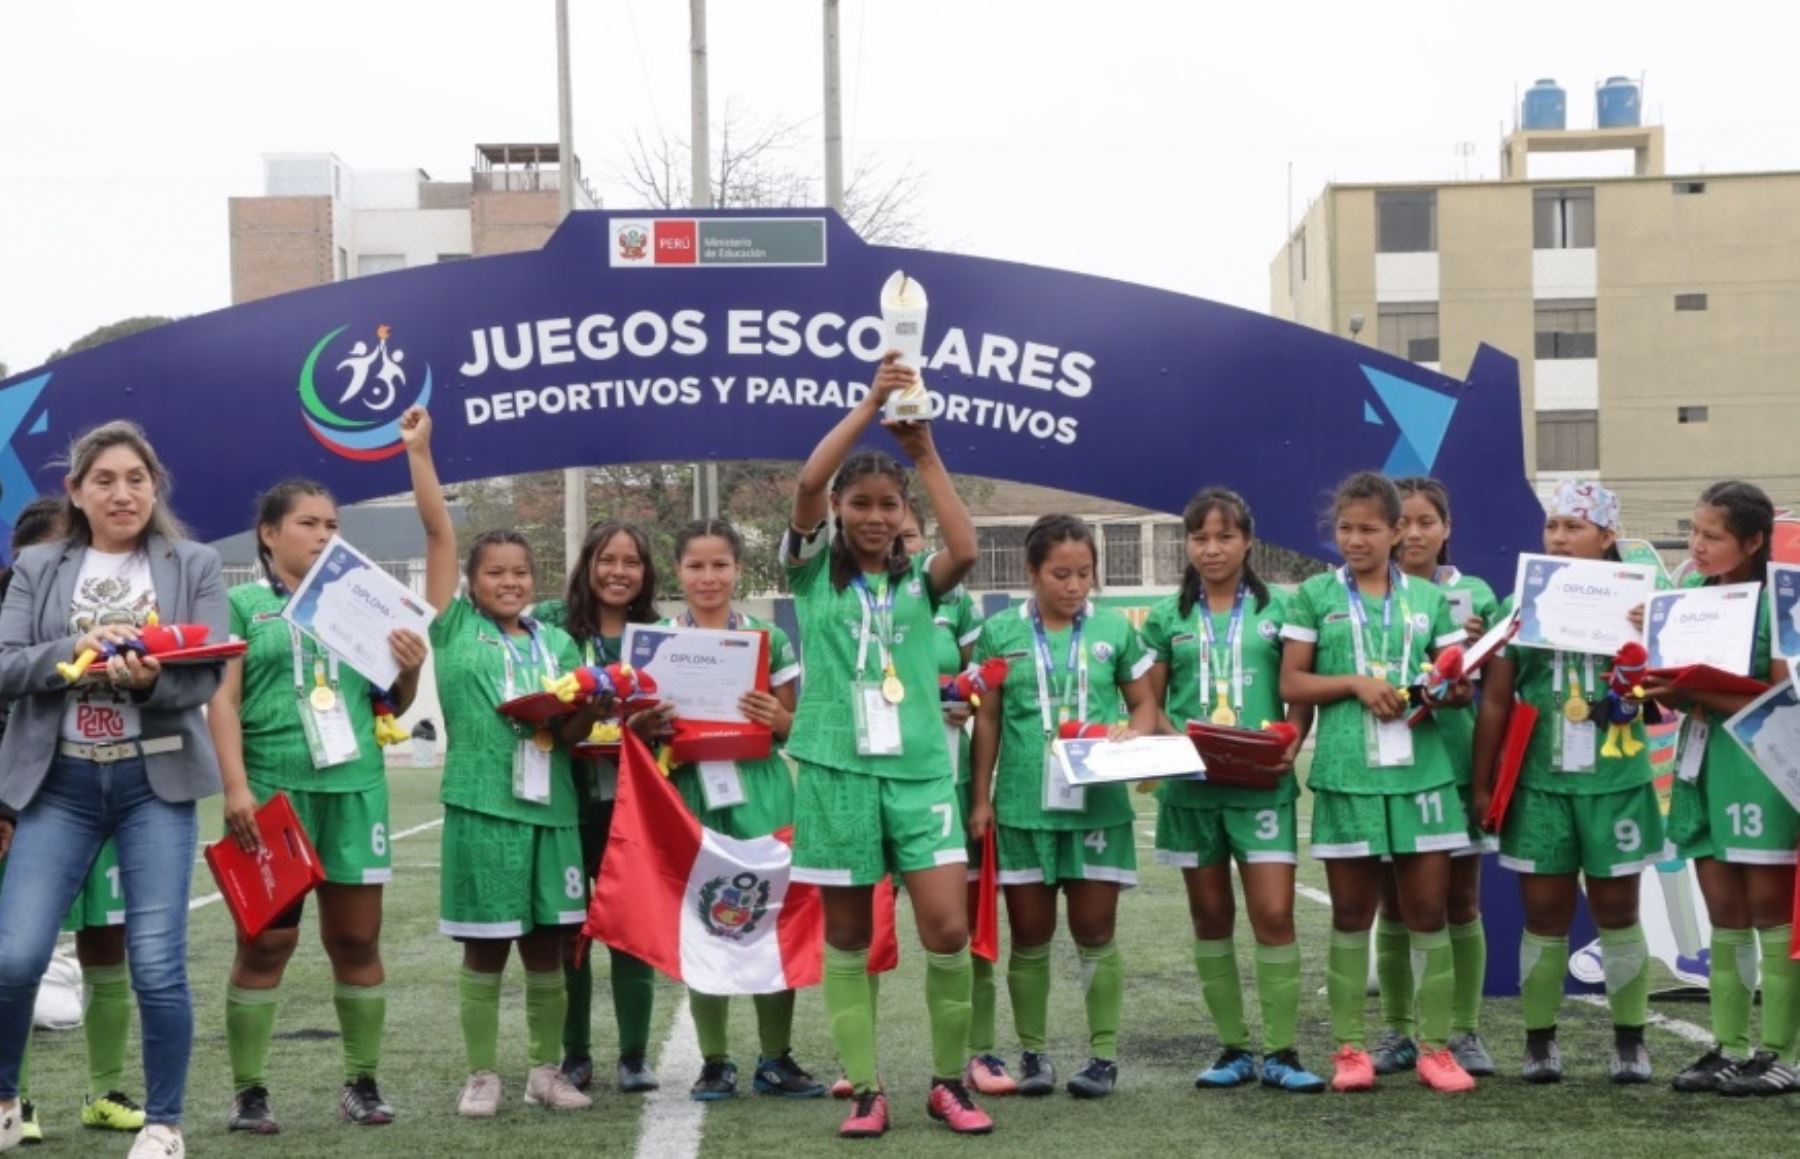 Equipo shipibo-konibo campeón de fútbol femenino en Juegos Escolares Deportivos